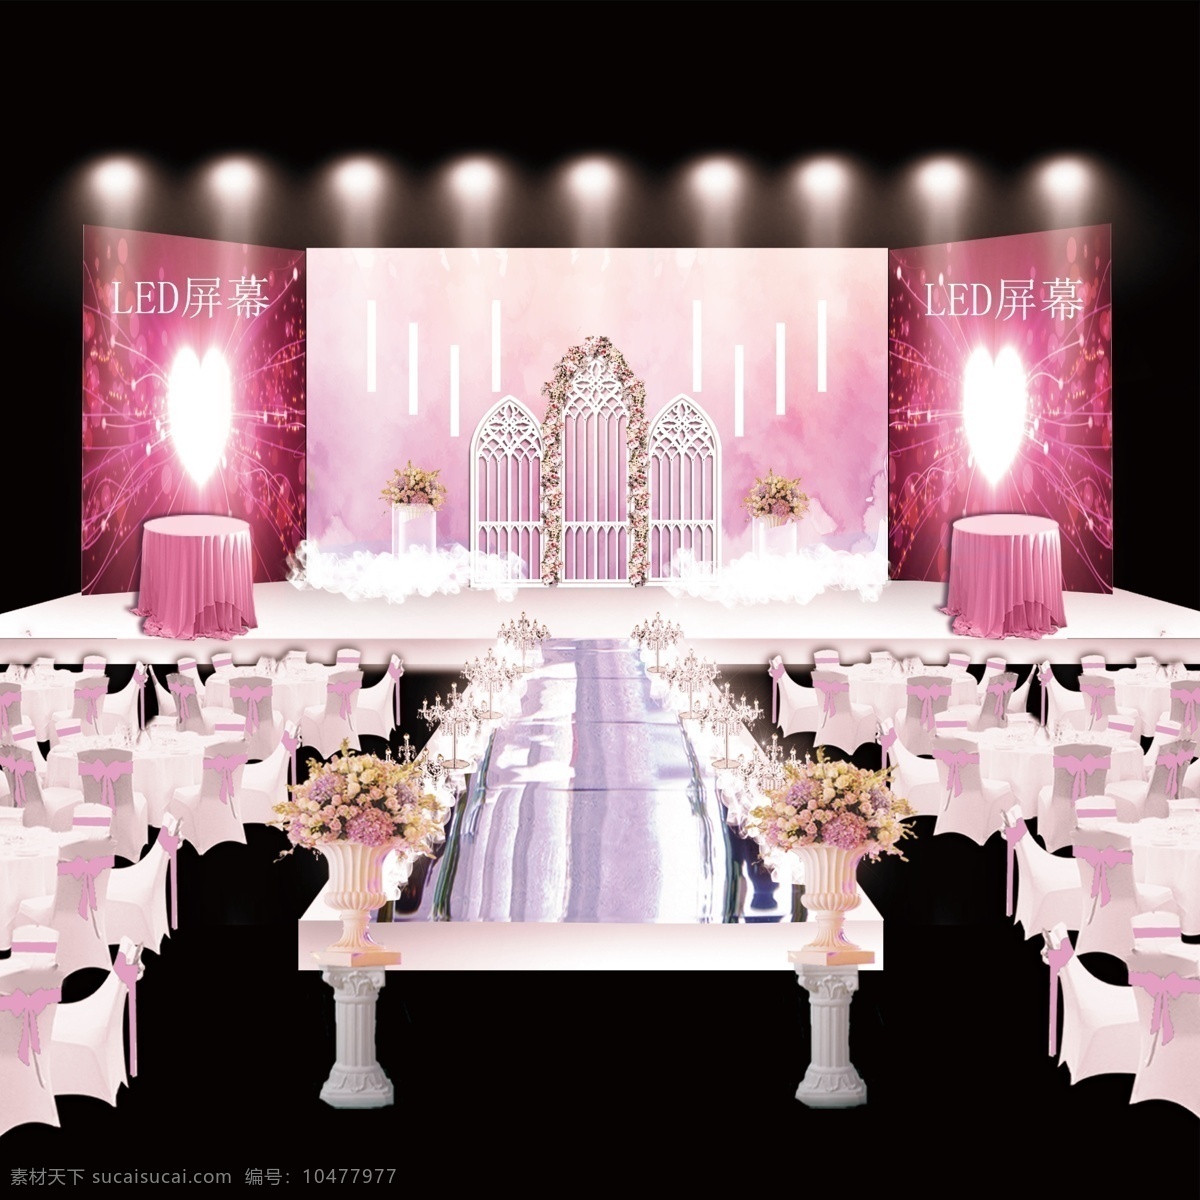 粉色 婚礼 背景 效果图 粉色婚礼 婚礼效果图 婚礼背景